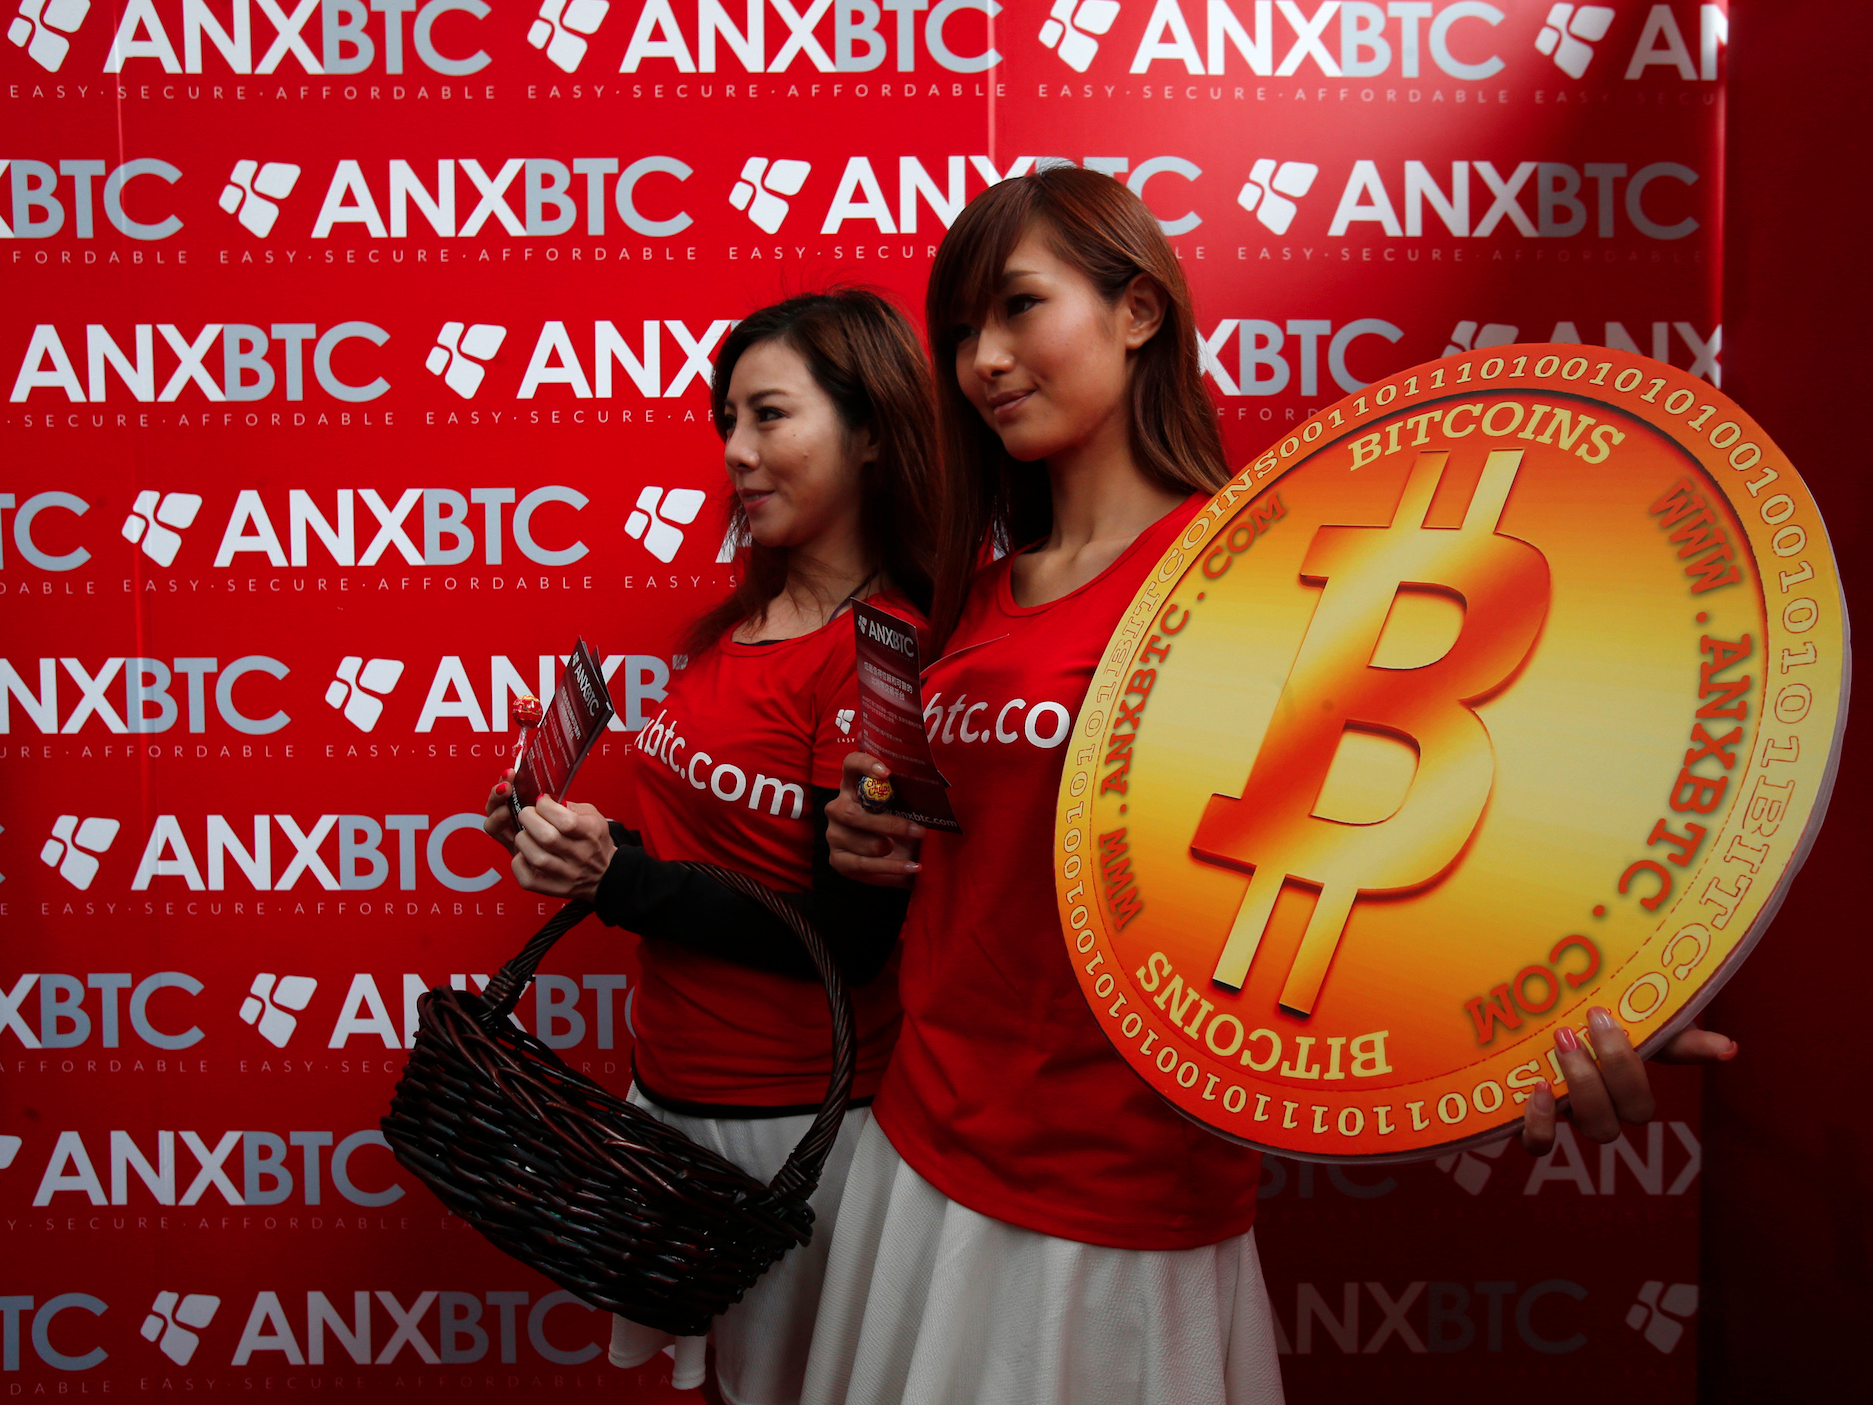 Bitcoin en andere cryptomunten kun je juridisch eigenlijk niet bezitten, zeggen Britse juristen